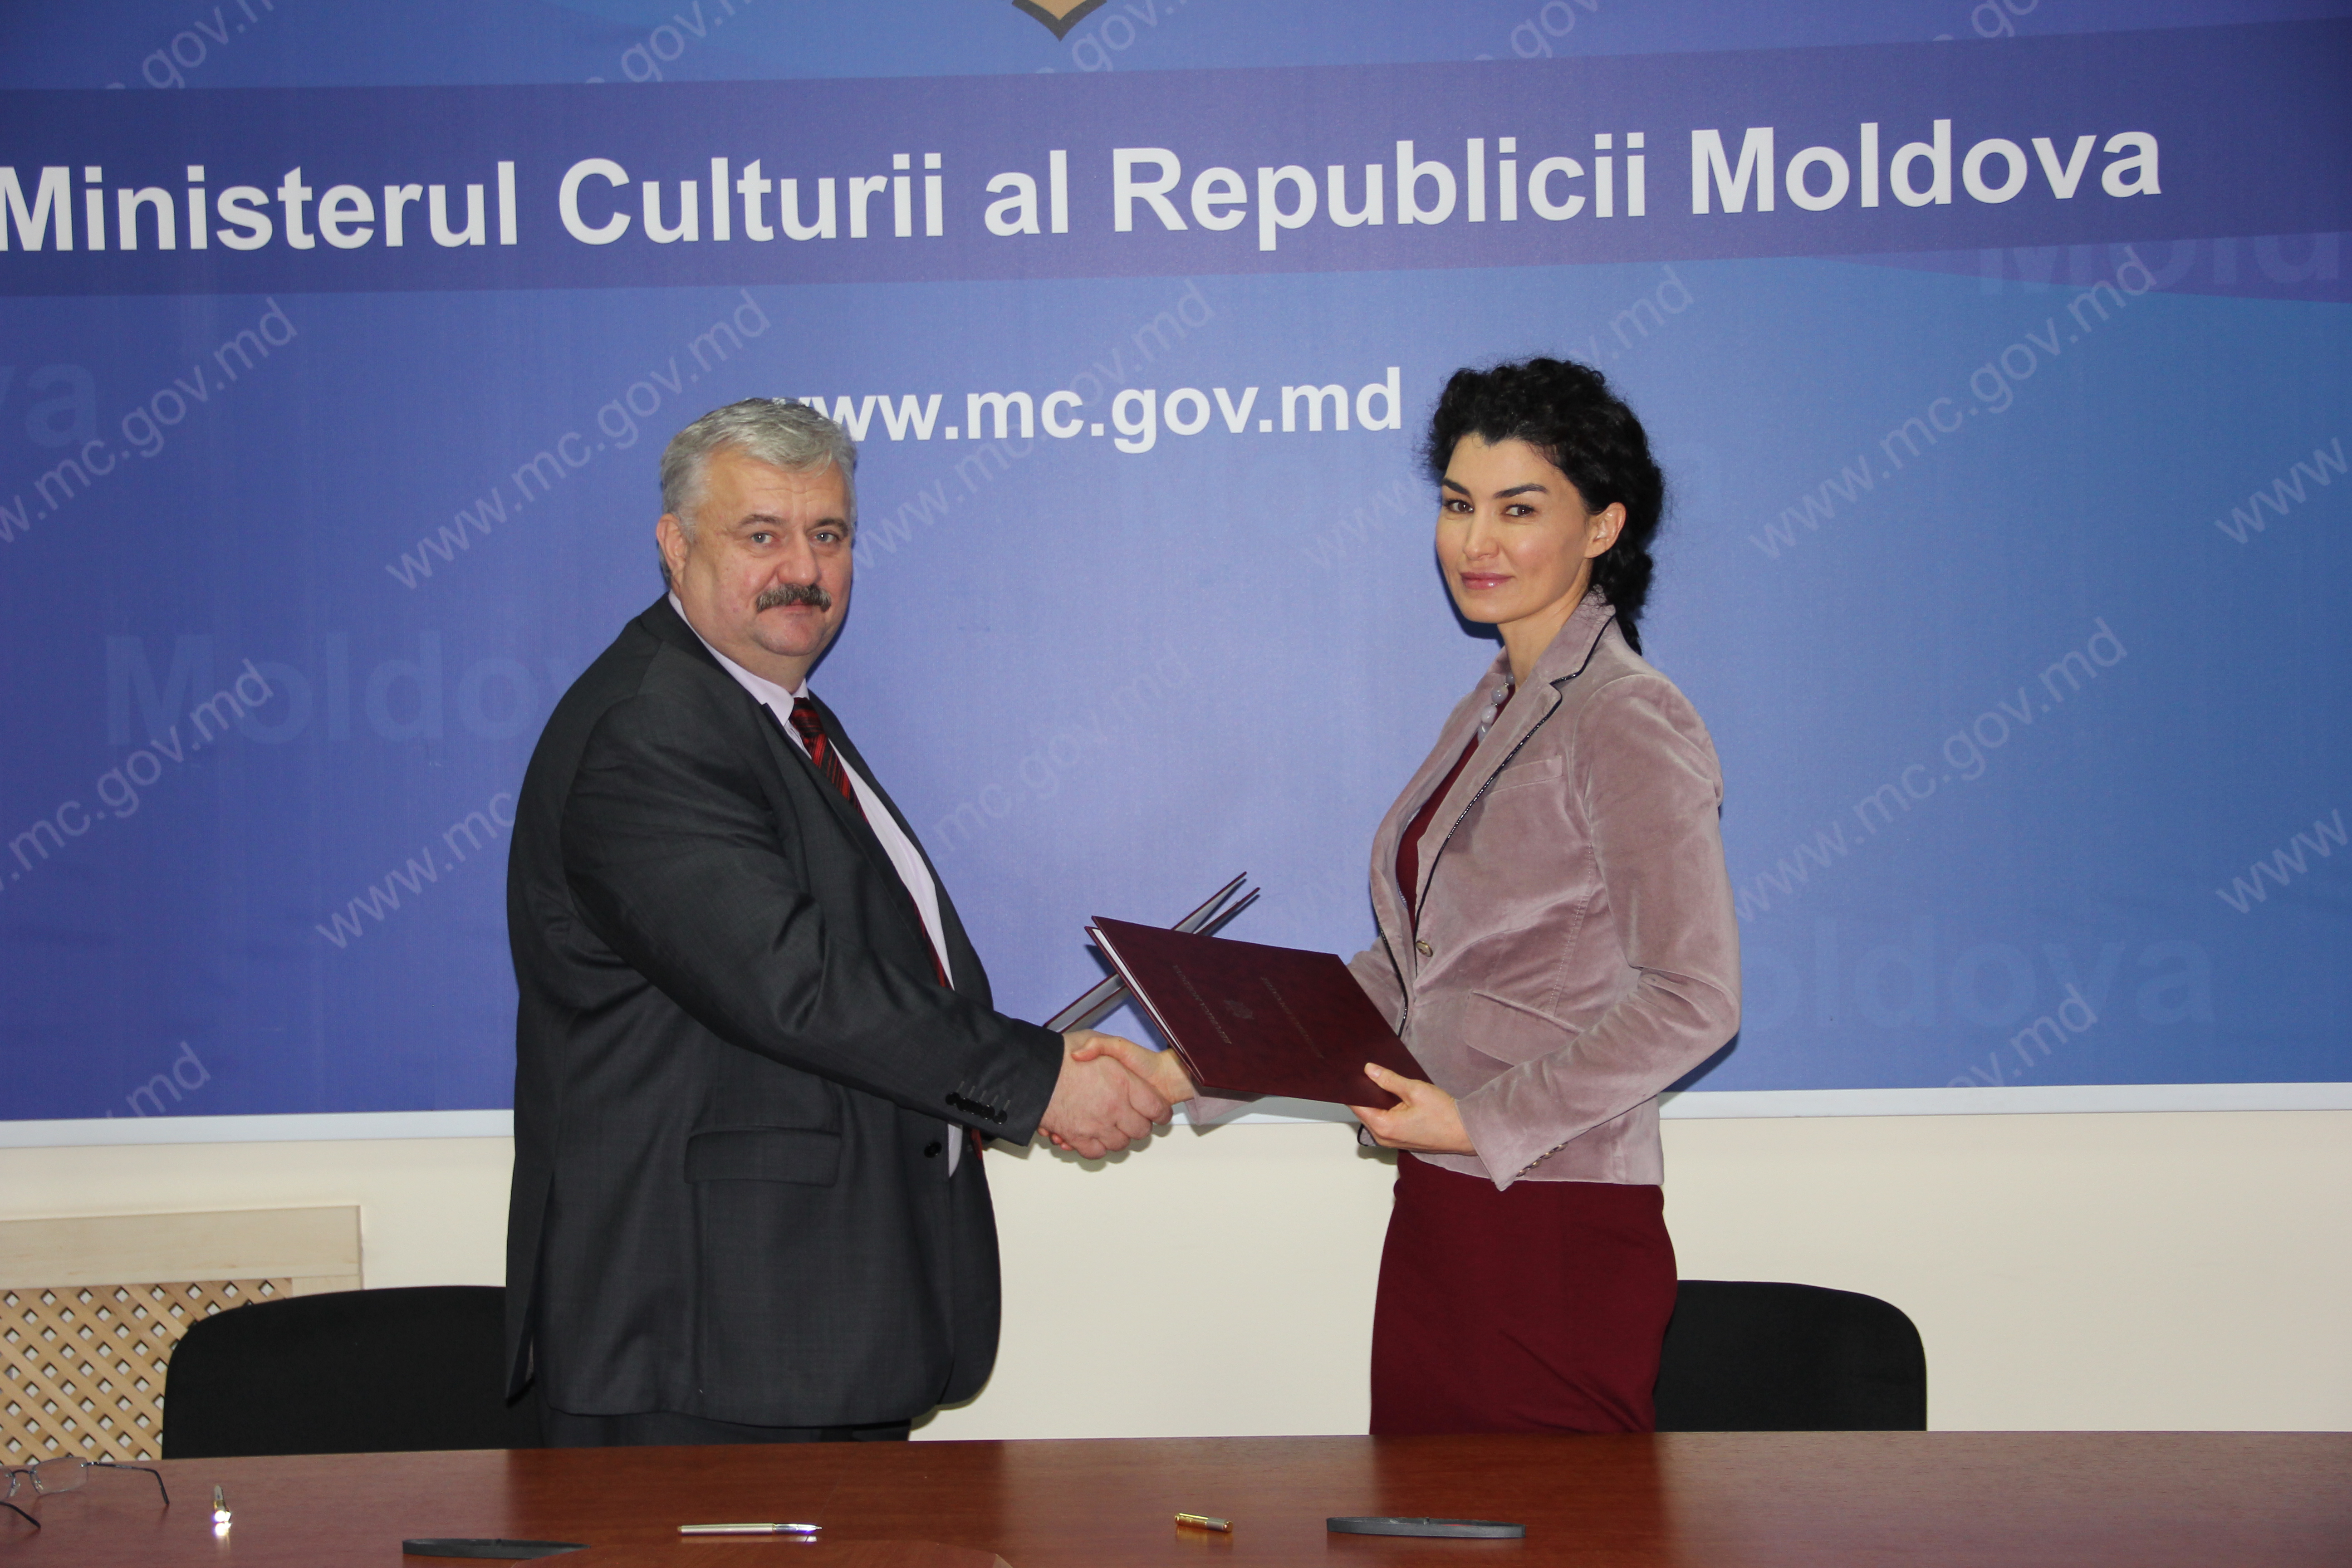 Igor Sarov, General Secretary of the Ministry of Education, Culture and Research and Rita Columbia, UNFPA Moldova Representative.